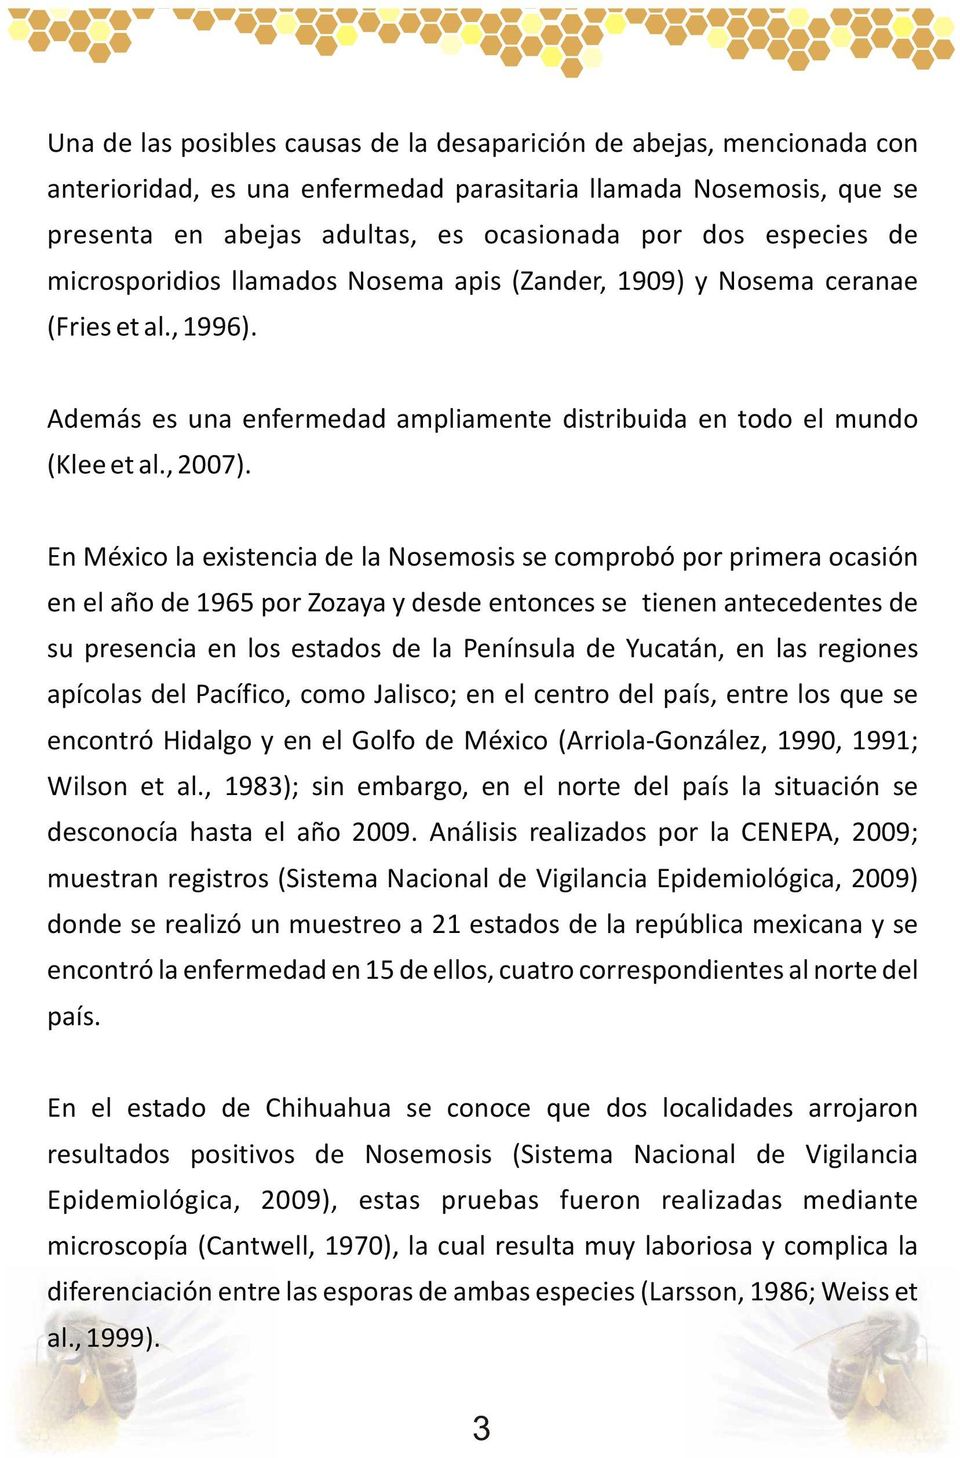 En México la existencia de la Nosemosis se comprobó por primera ocasión en el año de 1965 por Zozaya y desde entonces se tienen antecedentes de su presencia en los estados de la Península de Yucatán,